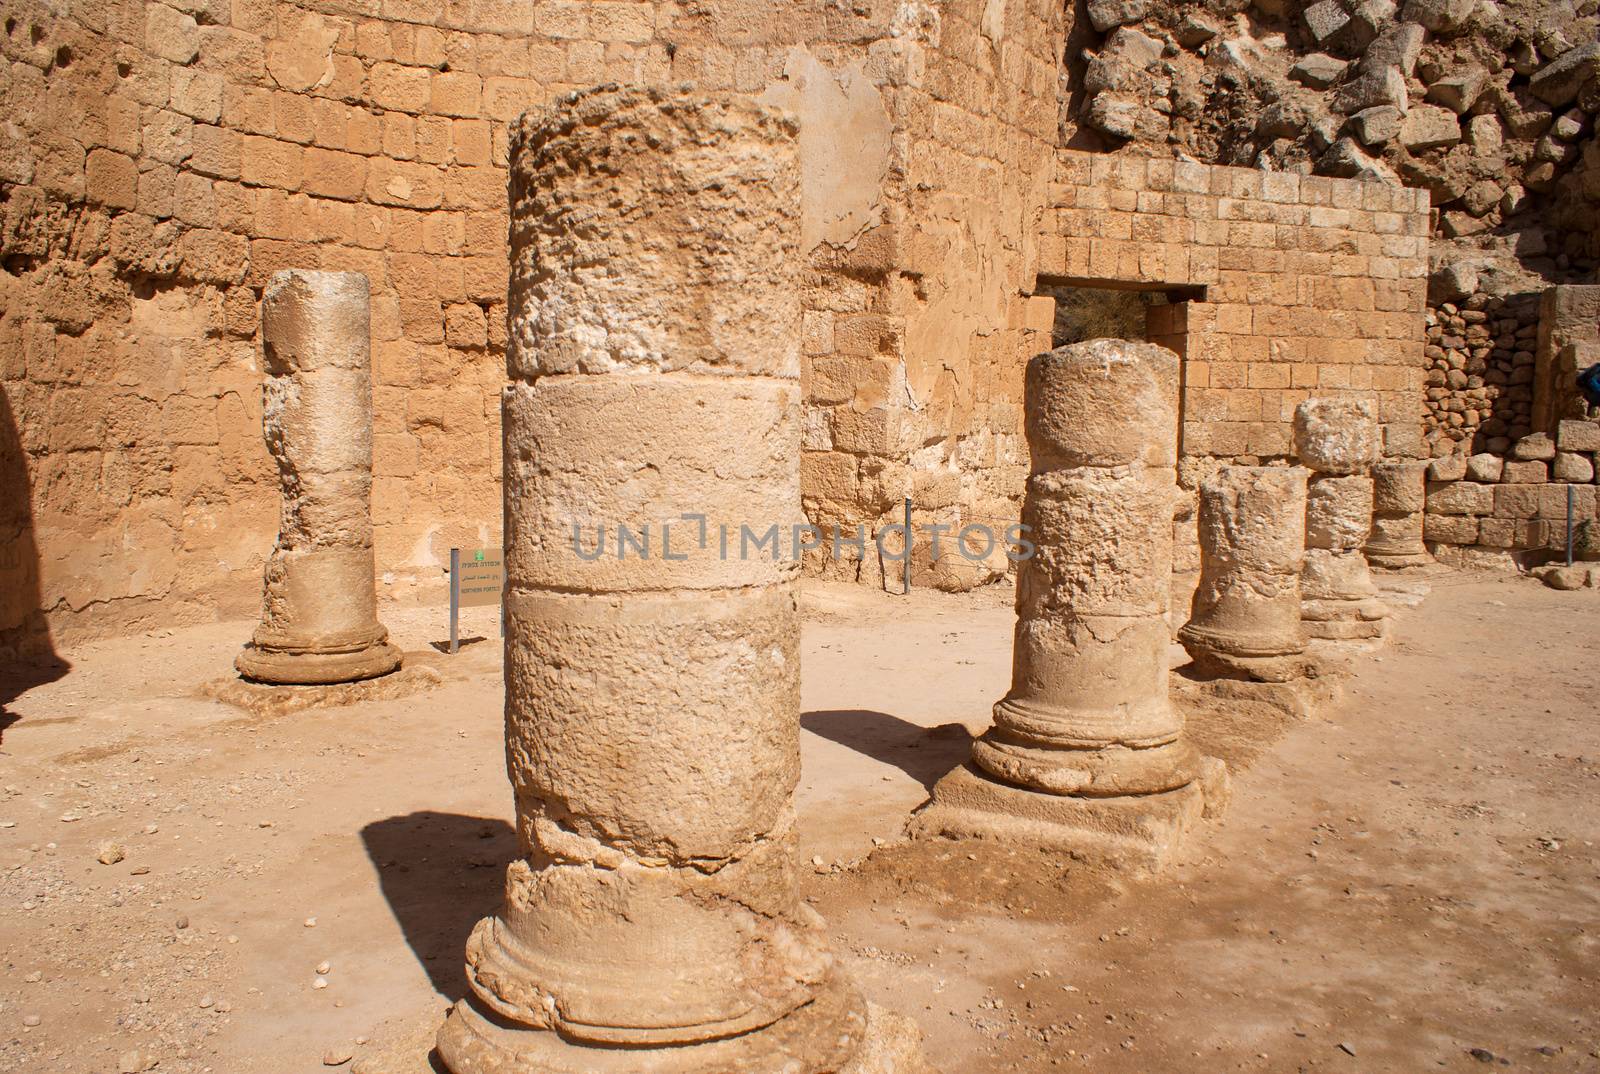 Herodion ruins in Israel by javax